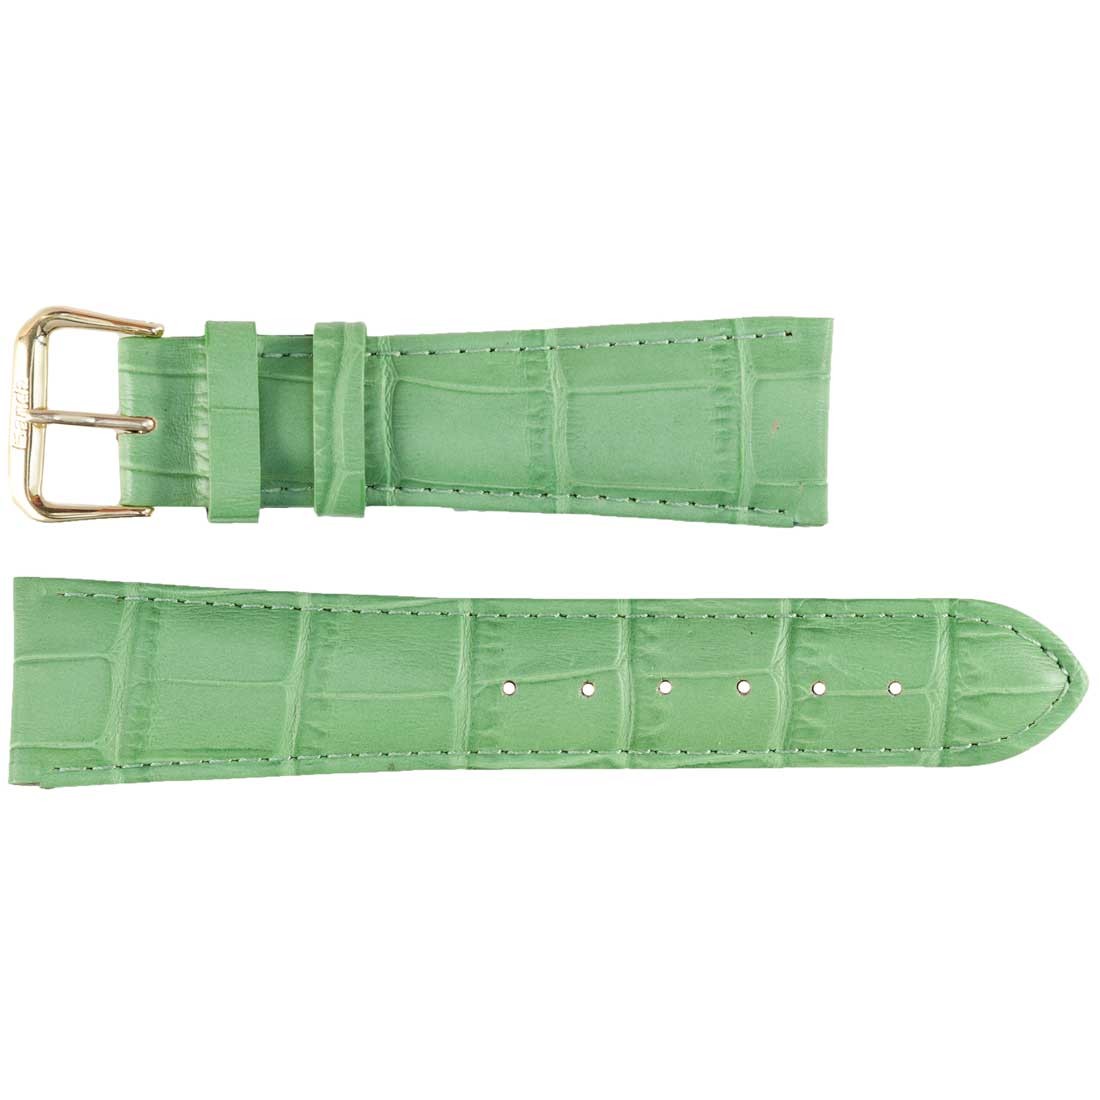 Banda No. 103 Alligator Grain Fine Leather Straps (6mm - 17mm)